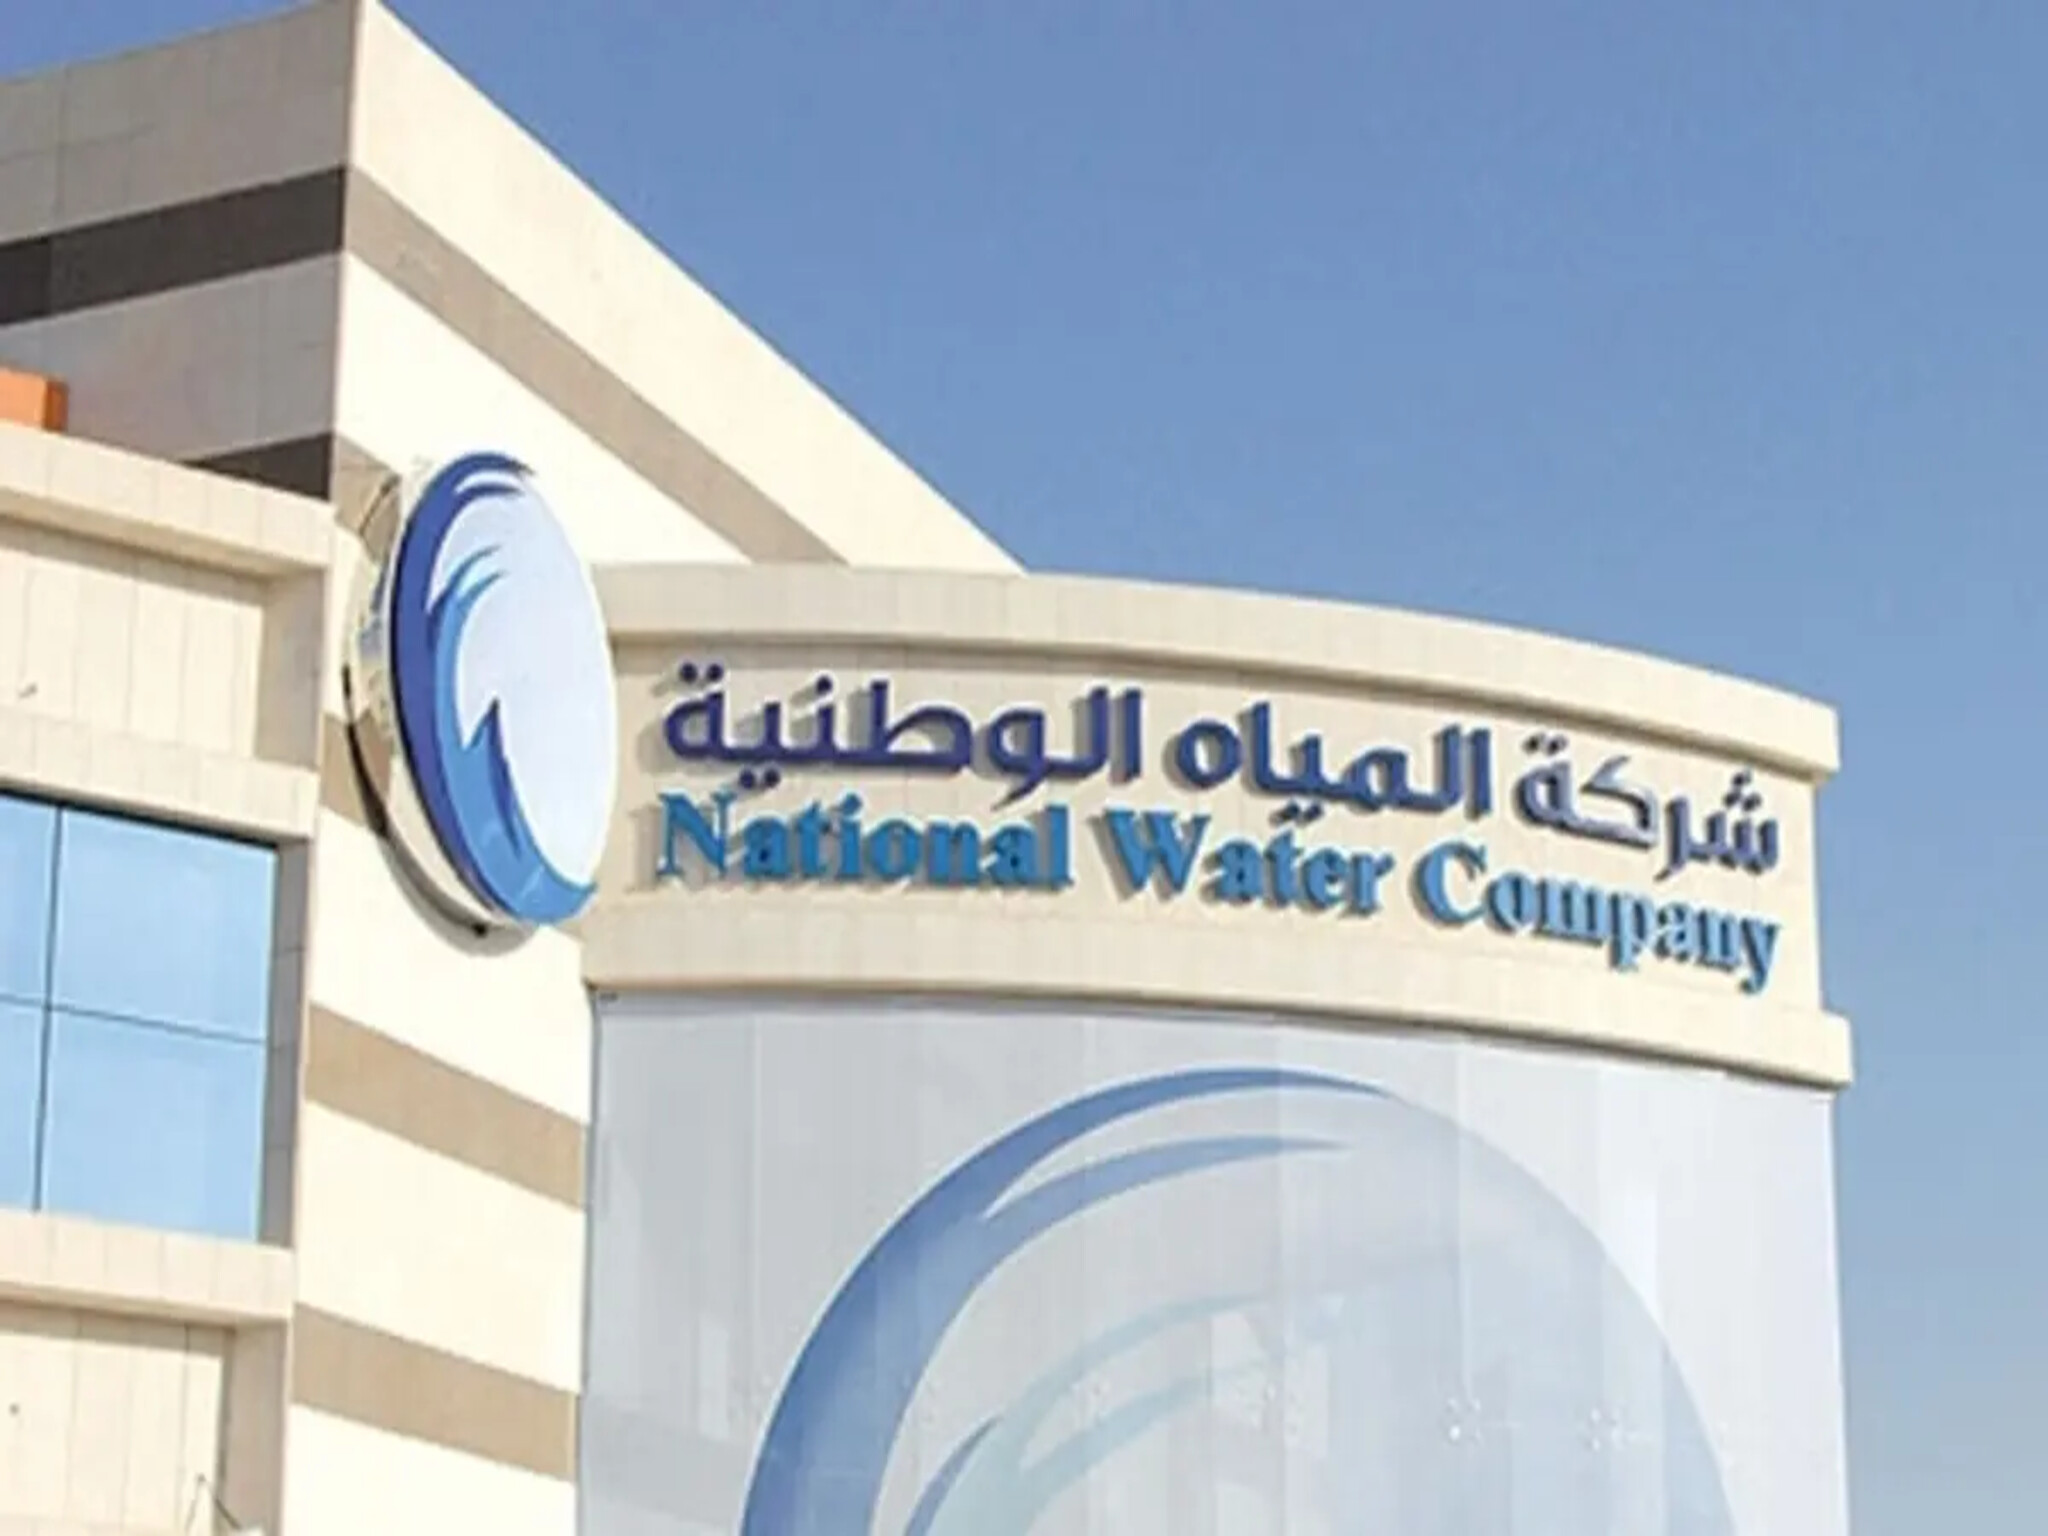 وظائف شركة المياه الوطنية بالمملكة السعودية 1445هـ وأهم الشروط المطلوبة 